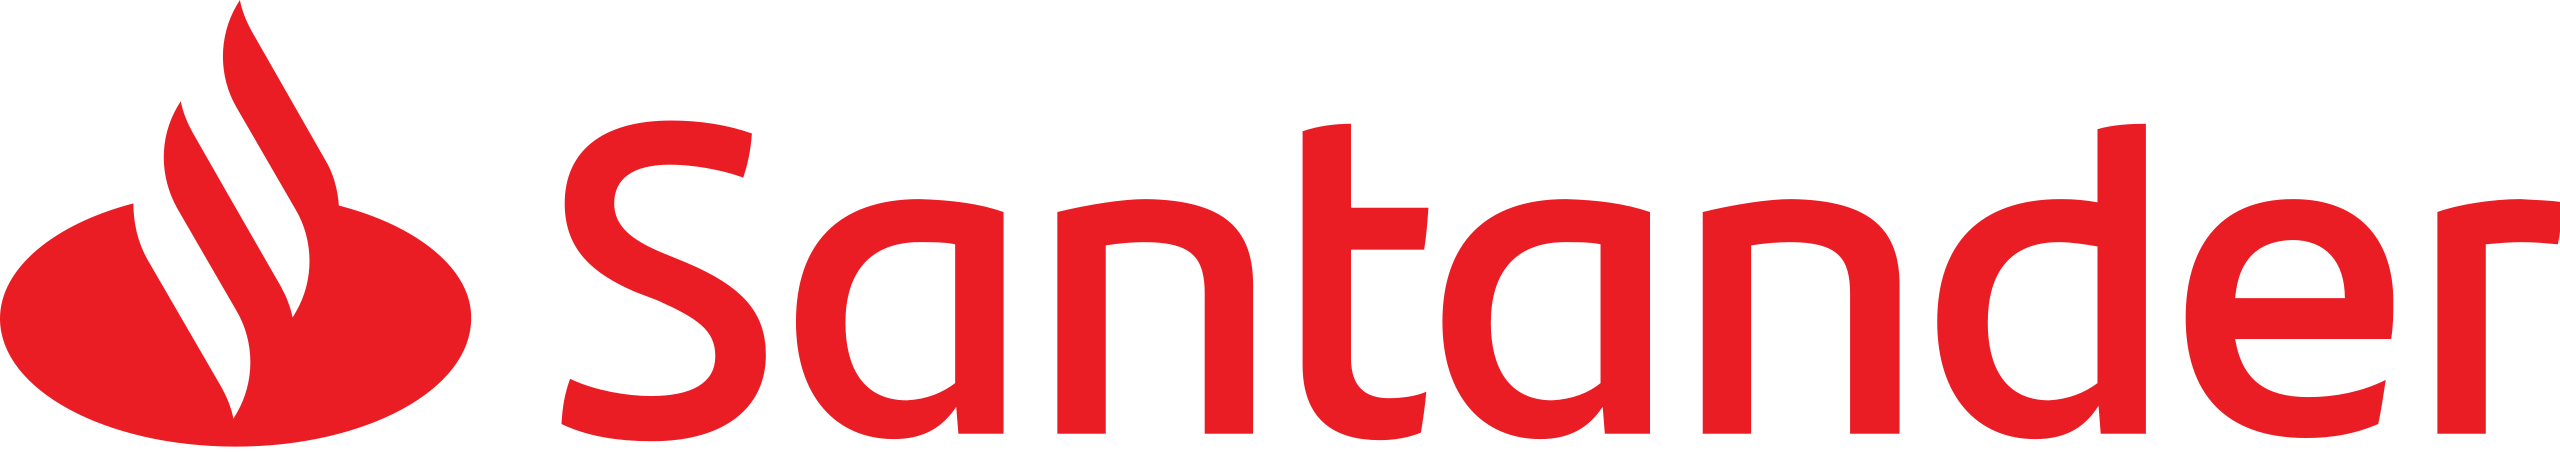 Santander_Logotipopng